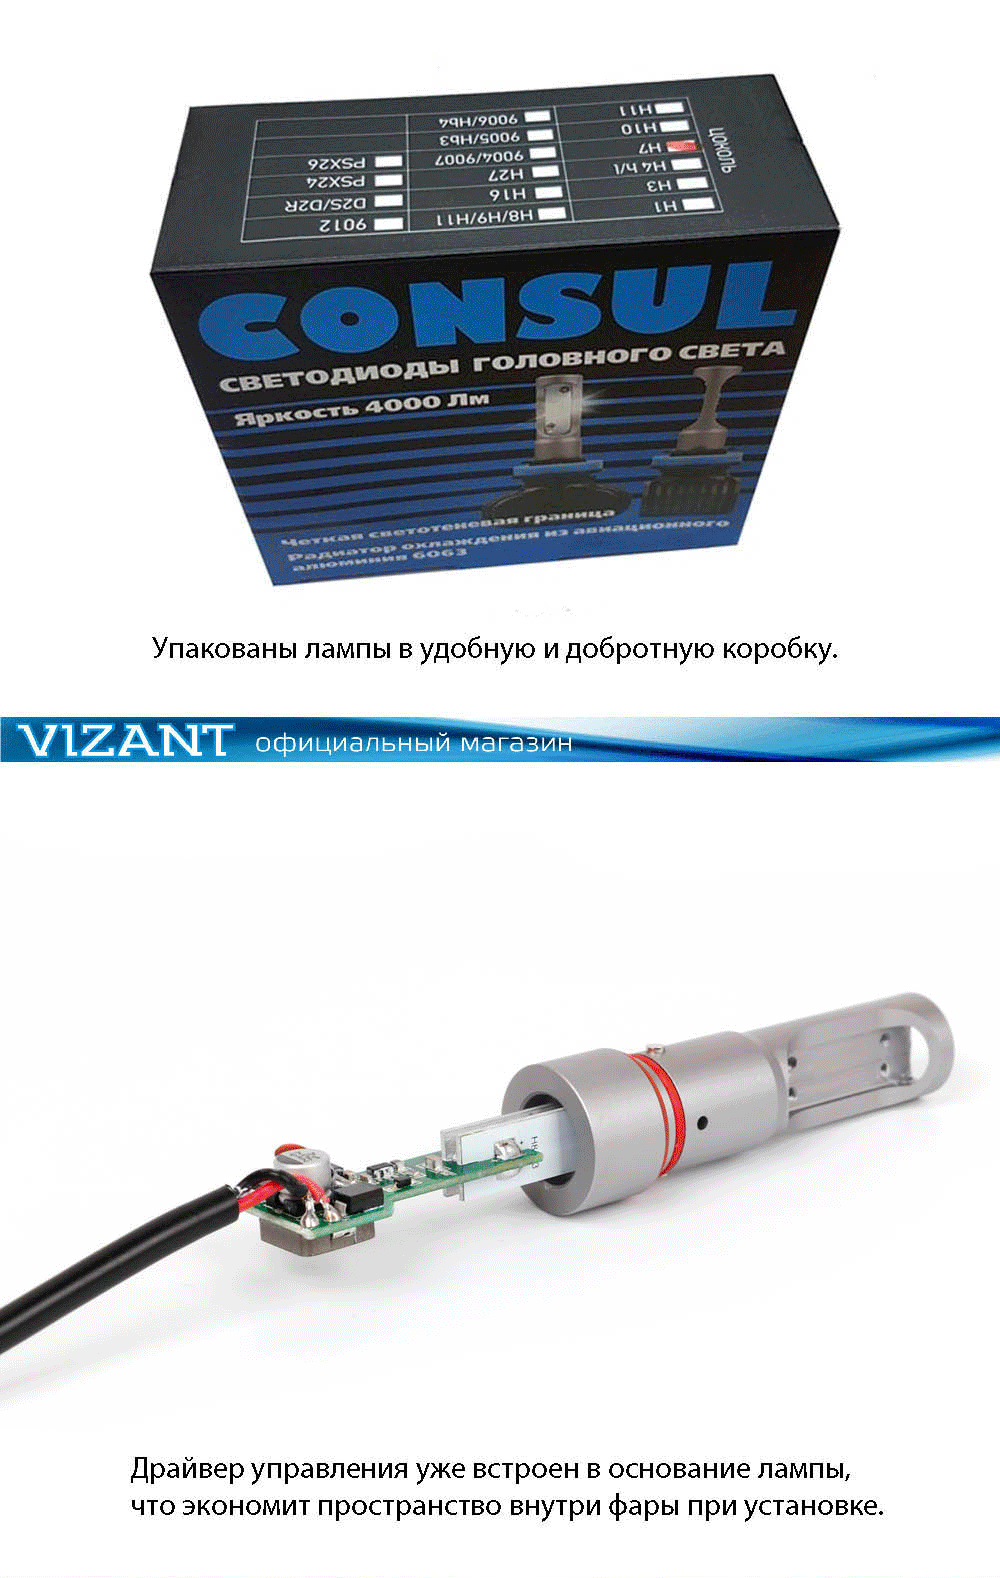  лампы Vizant D5 цоколь H1 с чипом csp 4000lm 5000k (цена .